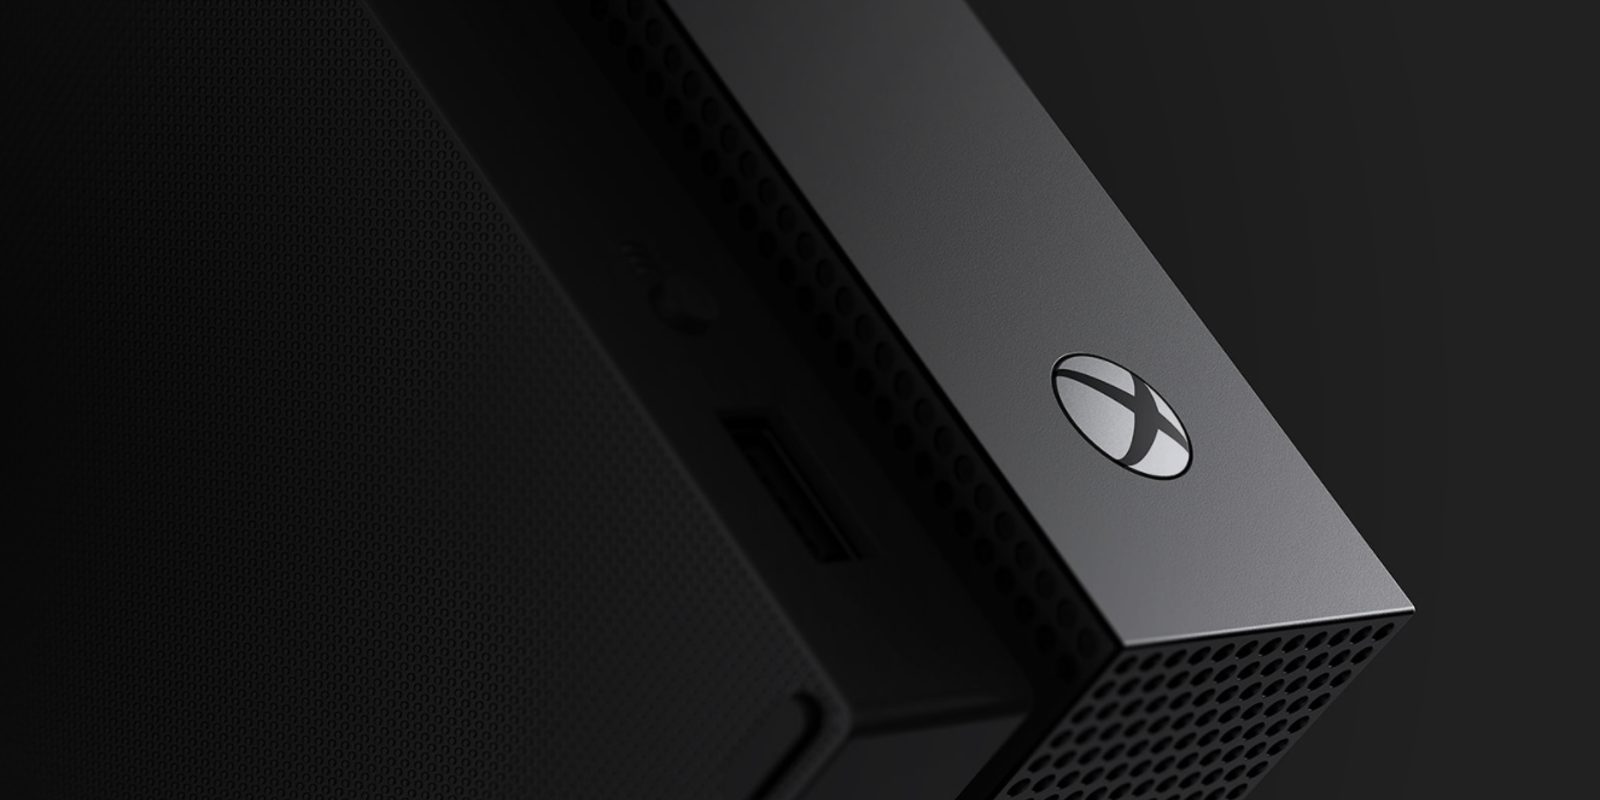 Xbox One X es más atractiva que PS4 Pro - Opinión